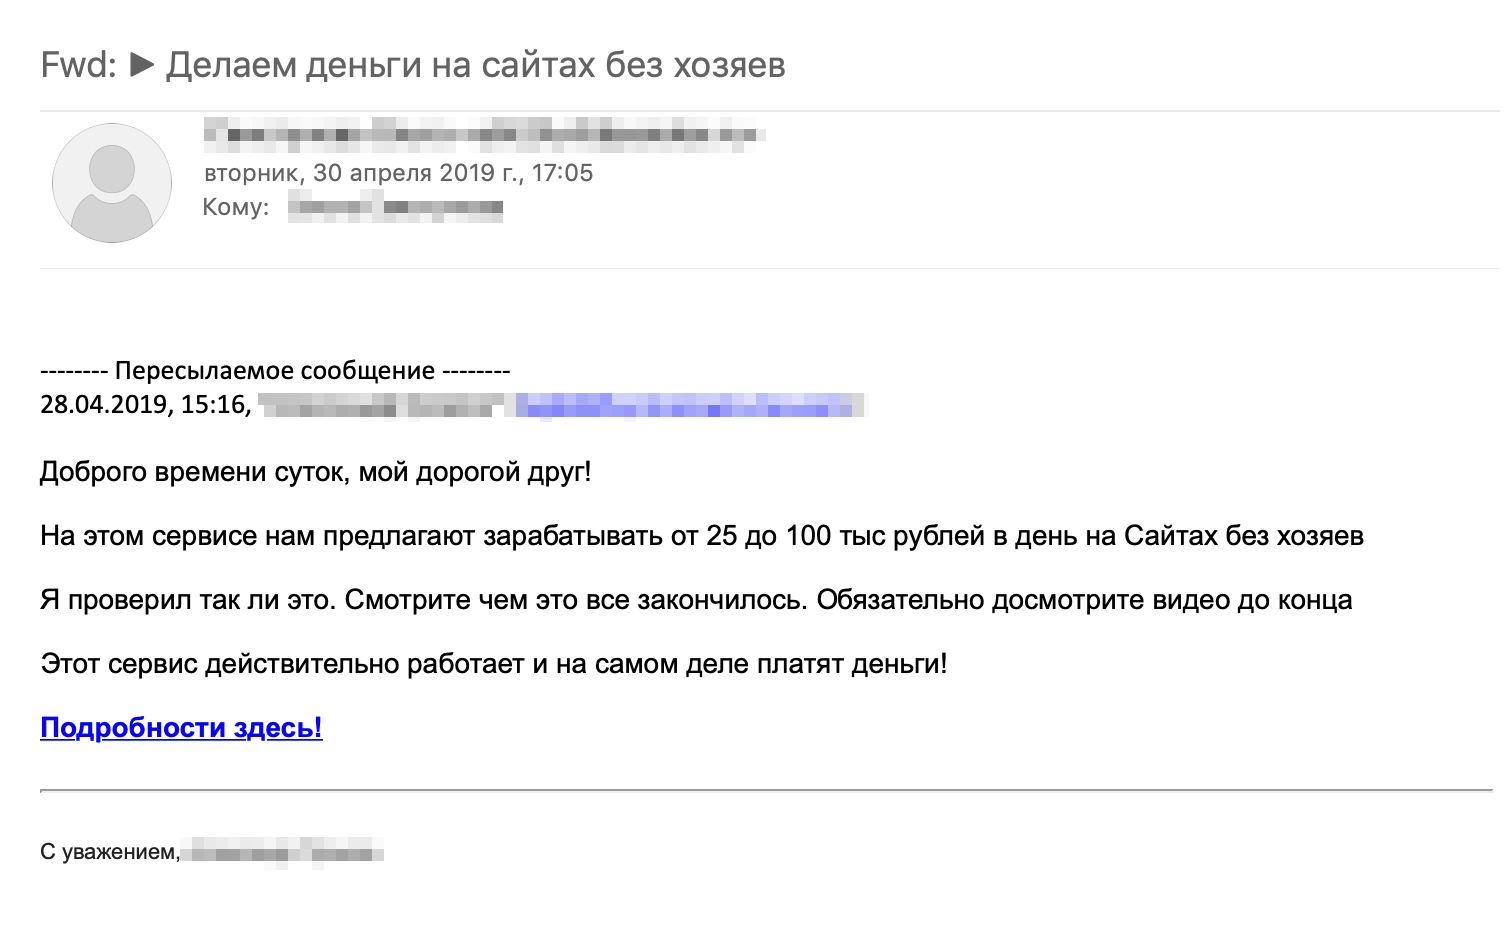 Как сделать, чтобы письма не попадали в спам Gmail